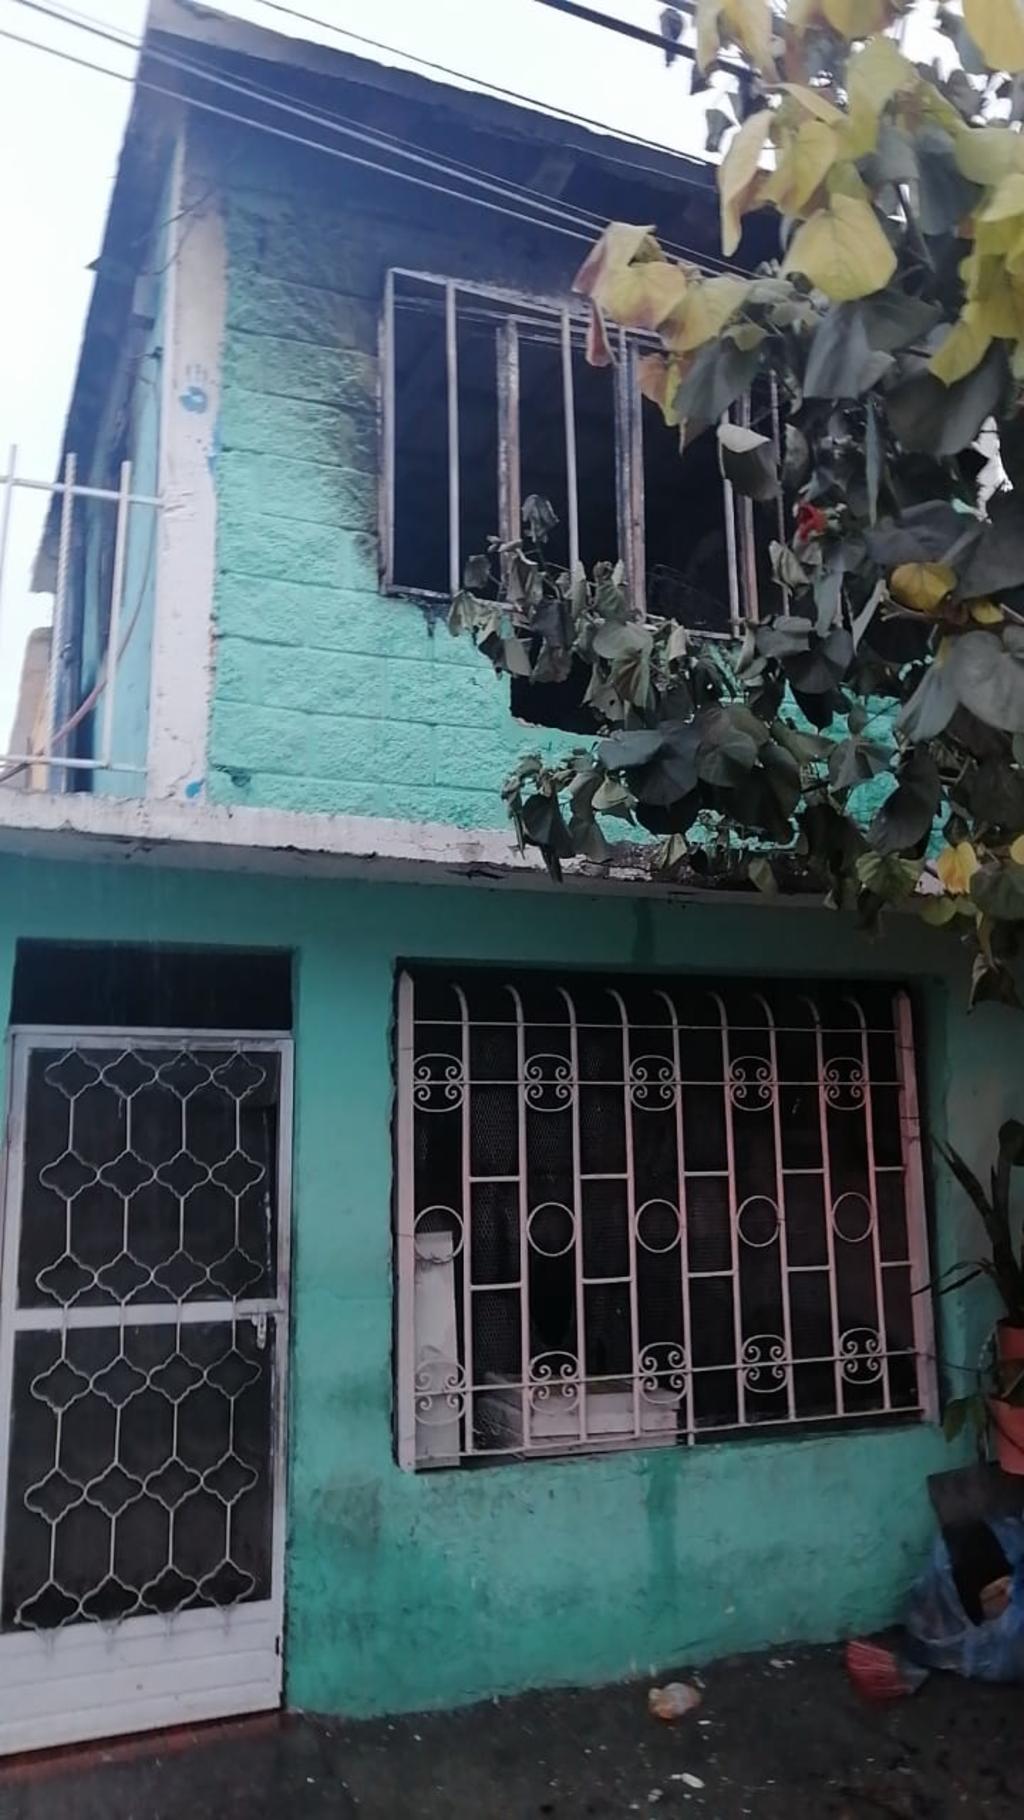 Los hechos ocurrieron cerca de las 18:45 horas en una vivienda de la calle Irapuato de dicho sector habitacional.
(EL SIGLO DE TORREÓN)